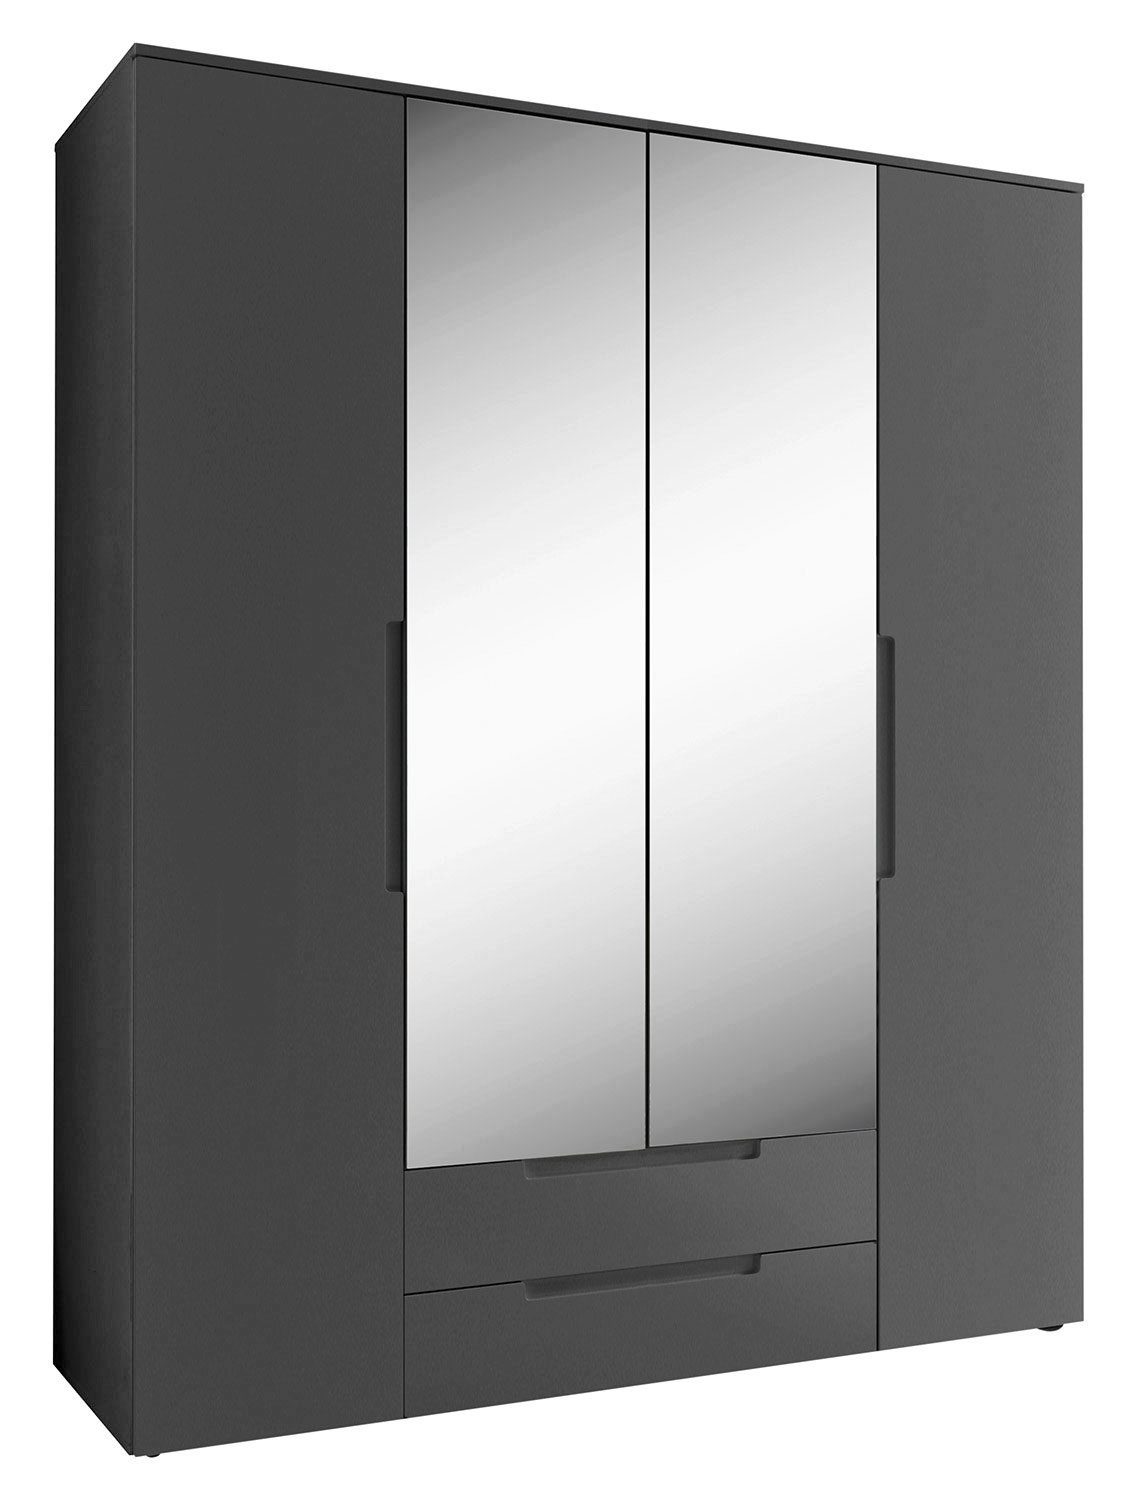 Pol-Power Drehtürenschrank SPICE, B 160 cm x H 208 cm, Graphit Dekor, 4 Türen, 2 Schubladen